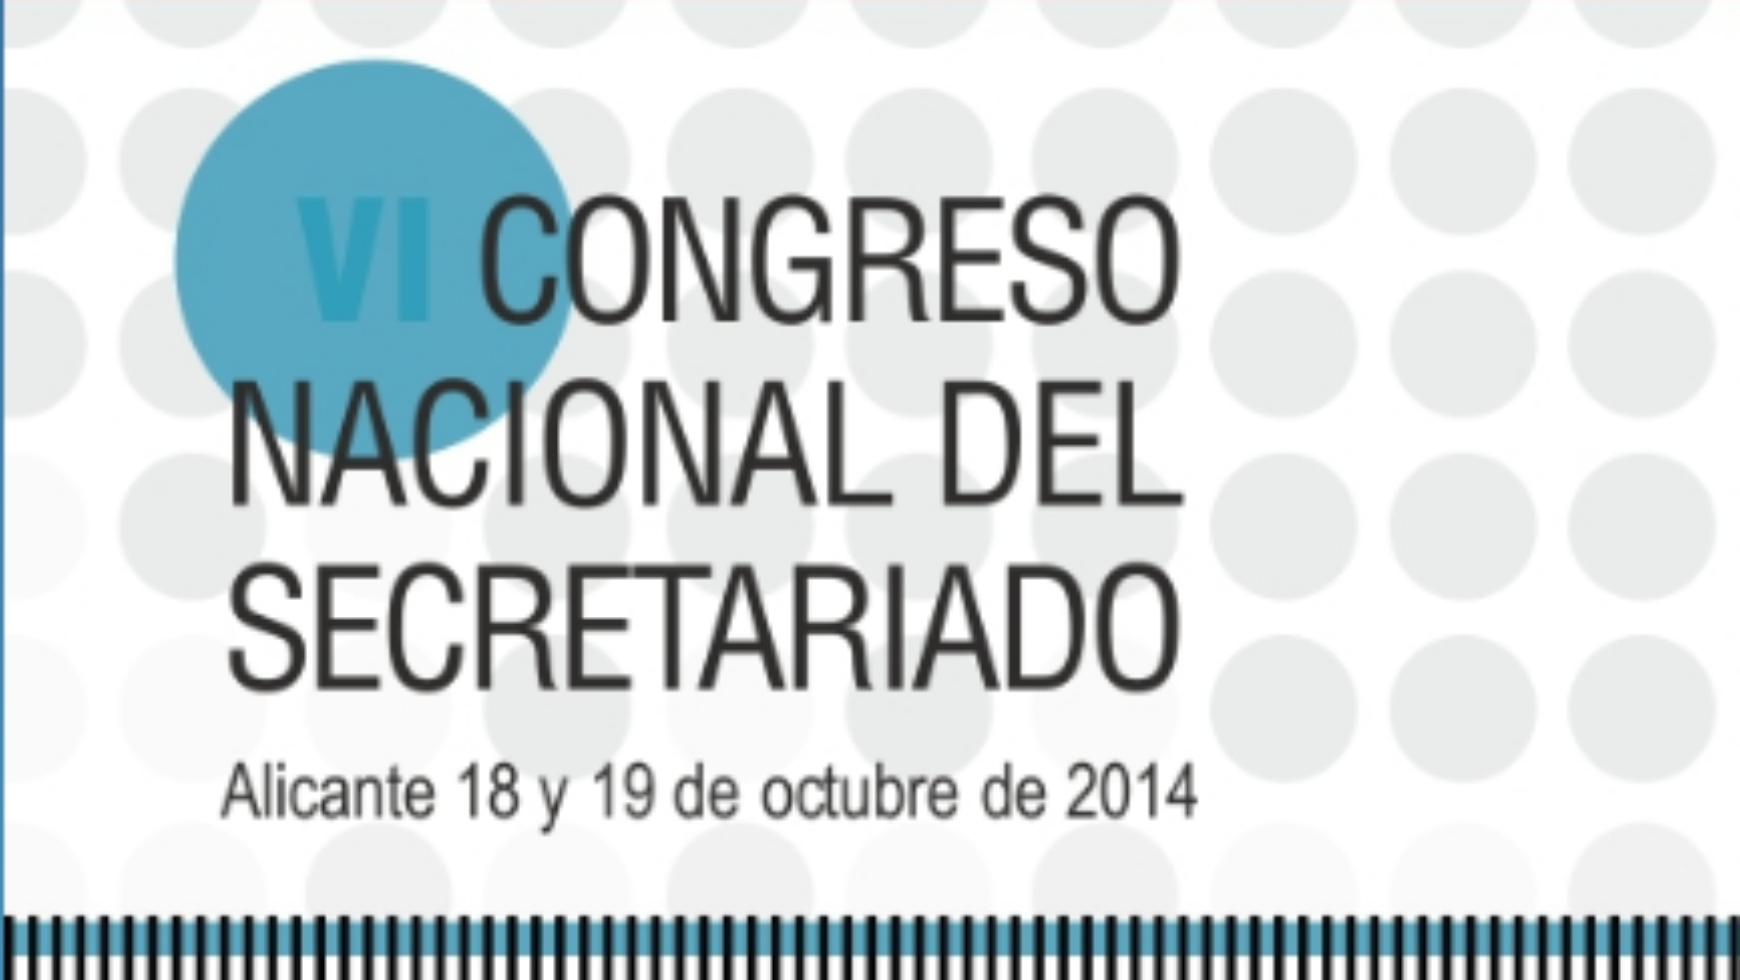 VI Congreso Nacional del Secretariado, se celebrará los días 18 y 19 de octubre, en Alicante.